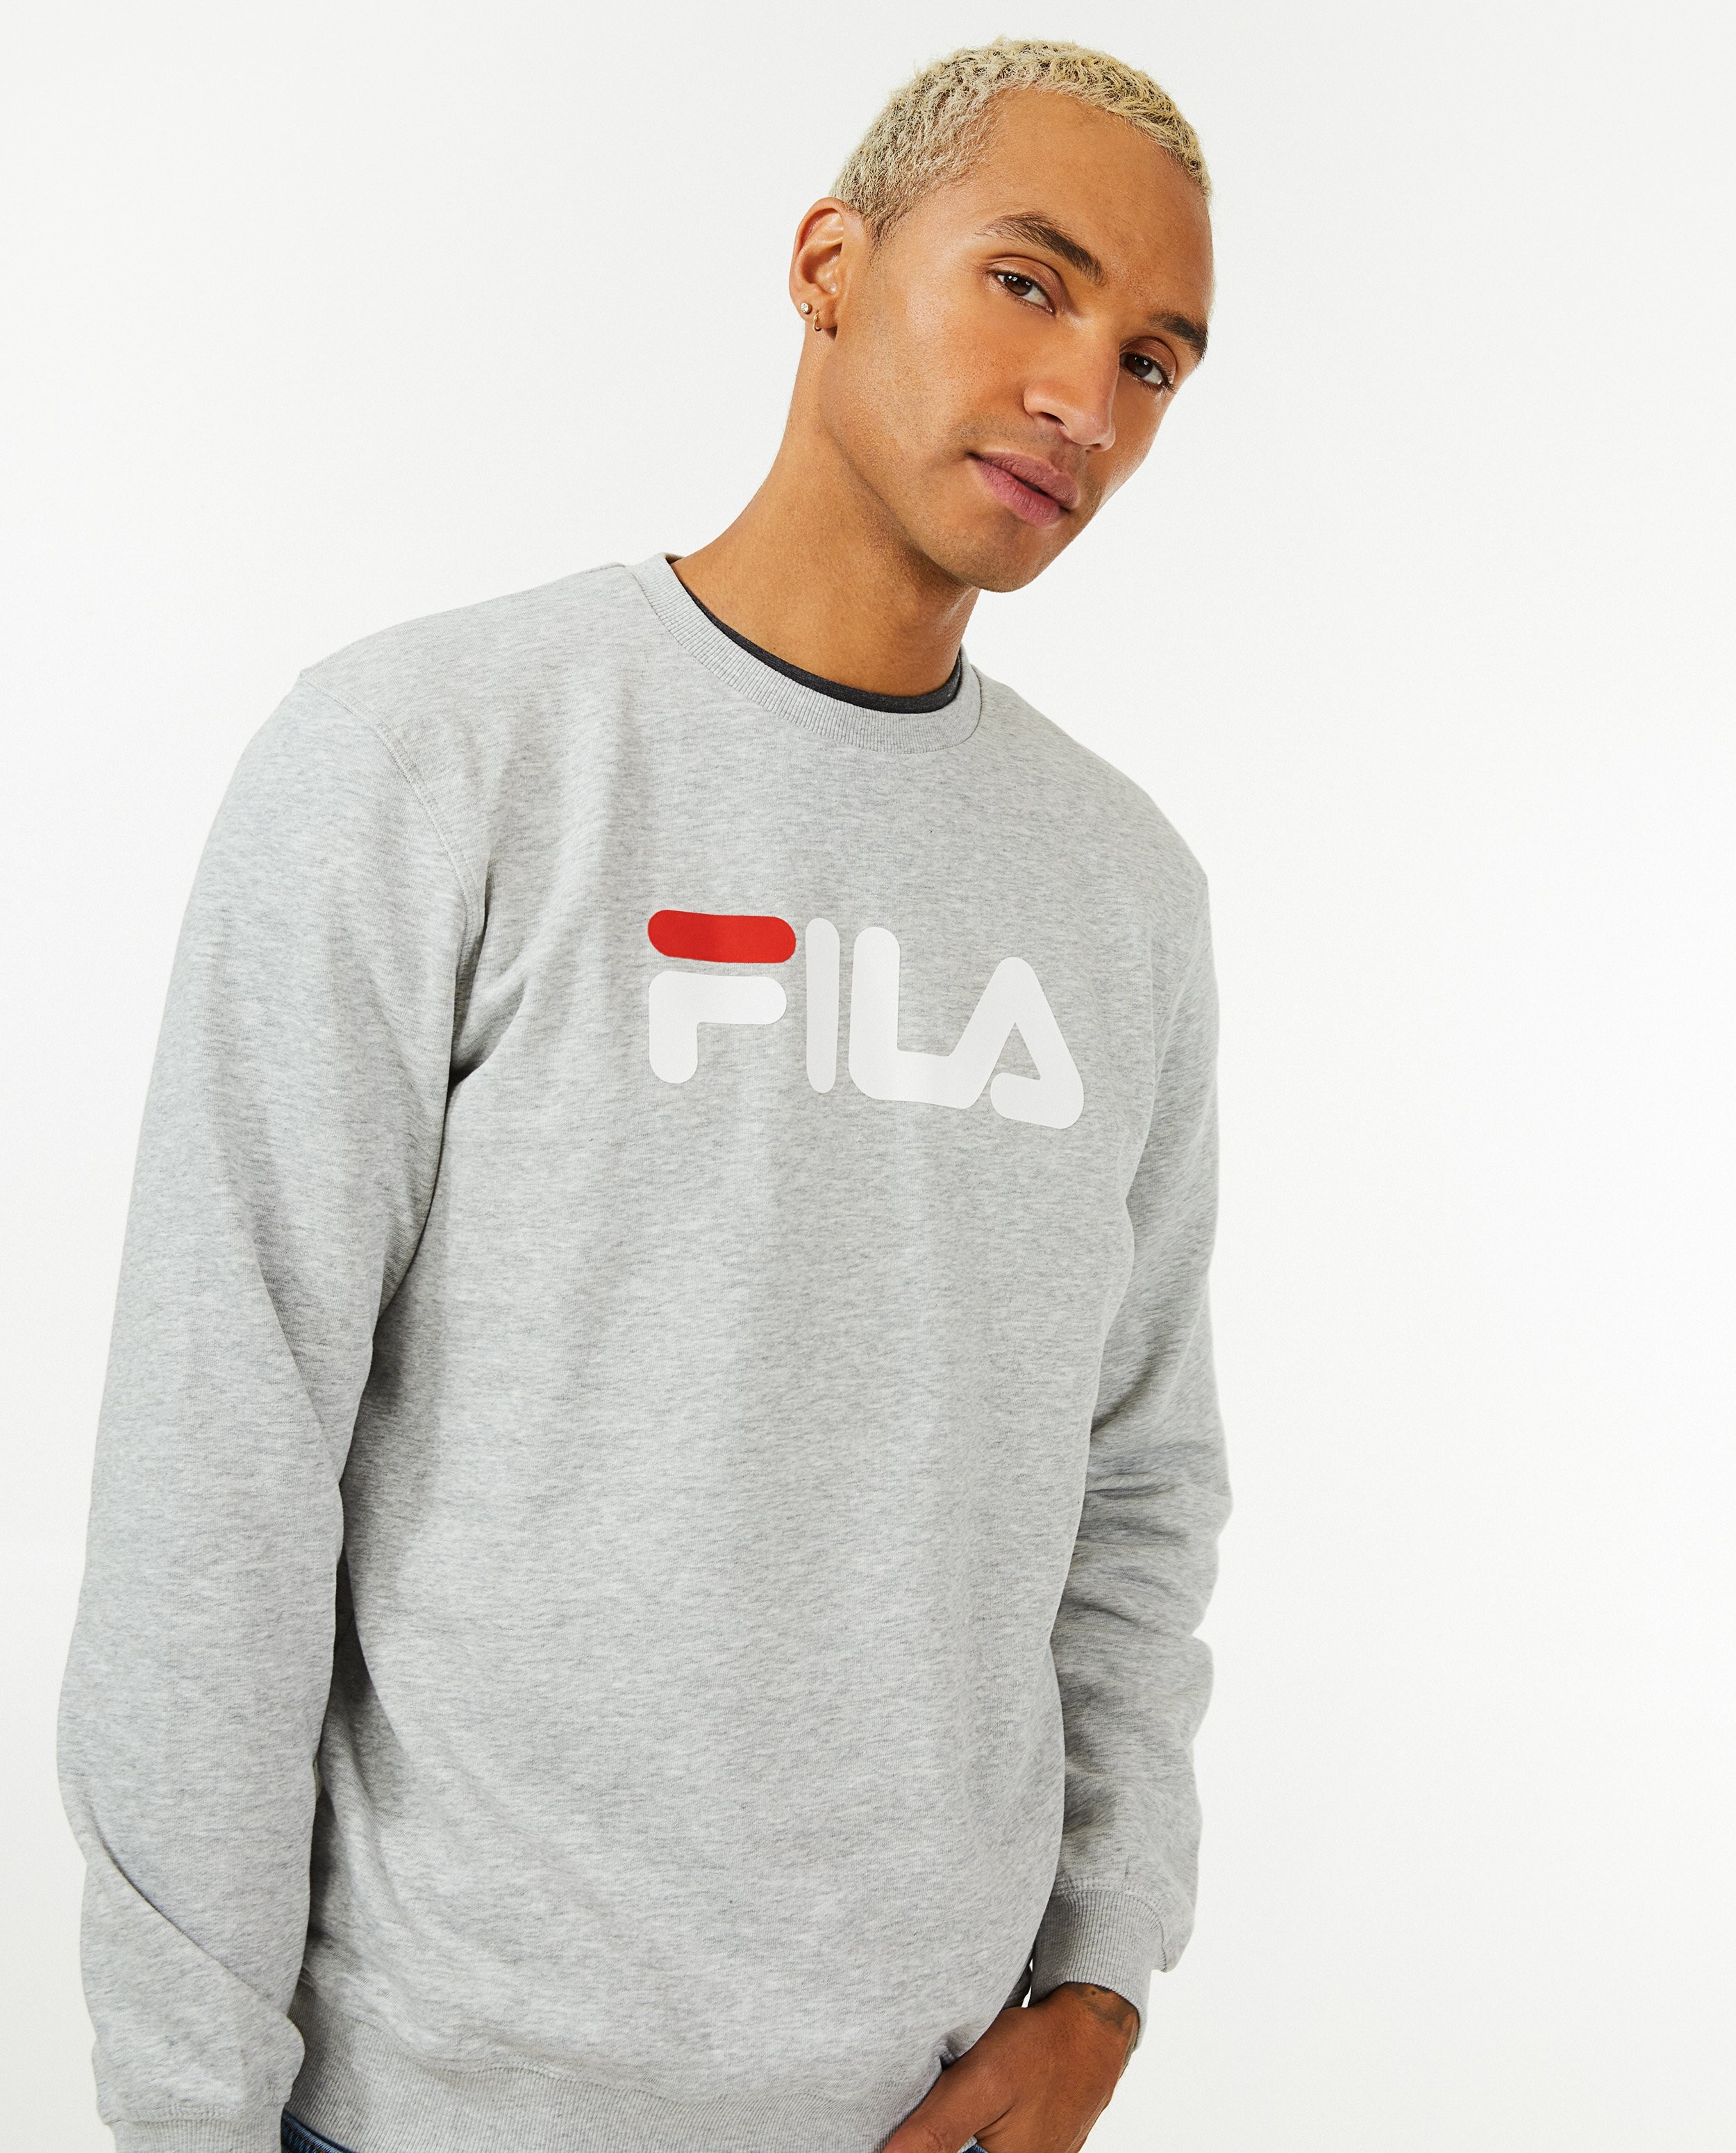 Eentonig Perth Blackborough Regelmatig Grijze sweater met logo Fila | JBC België België